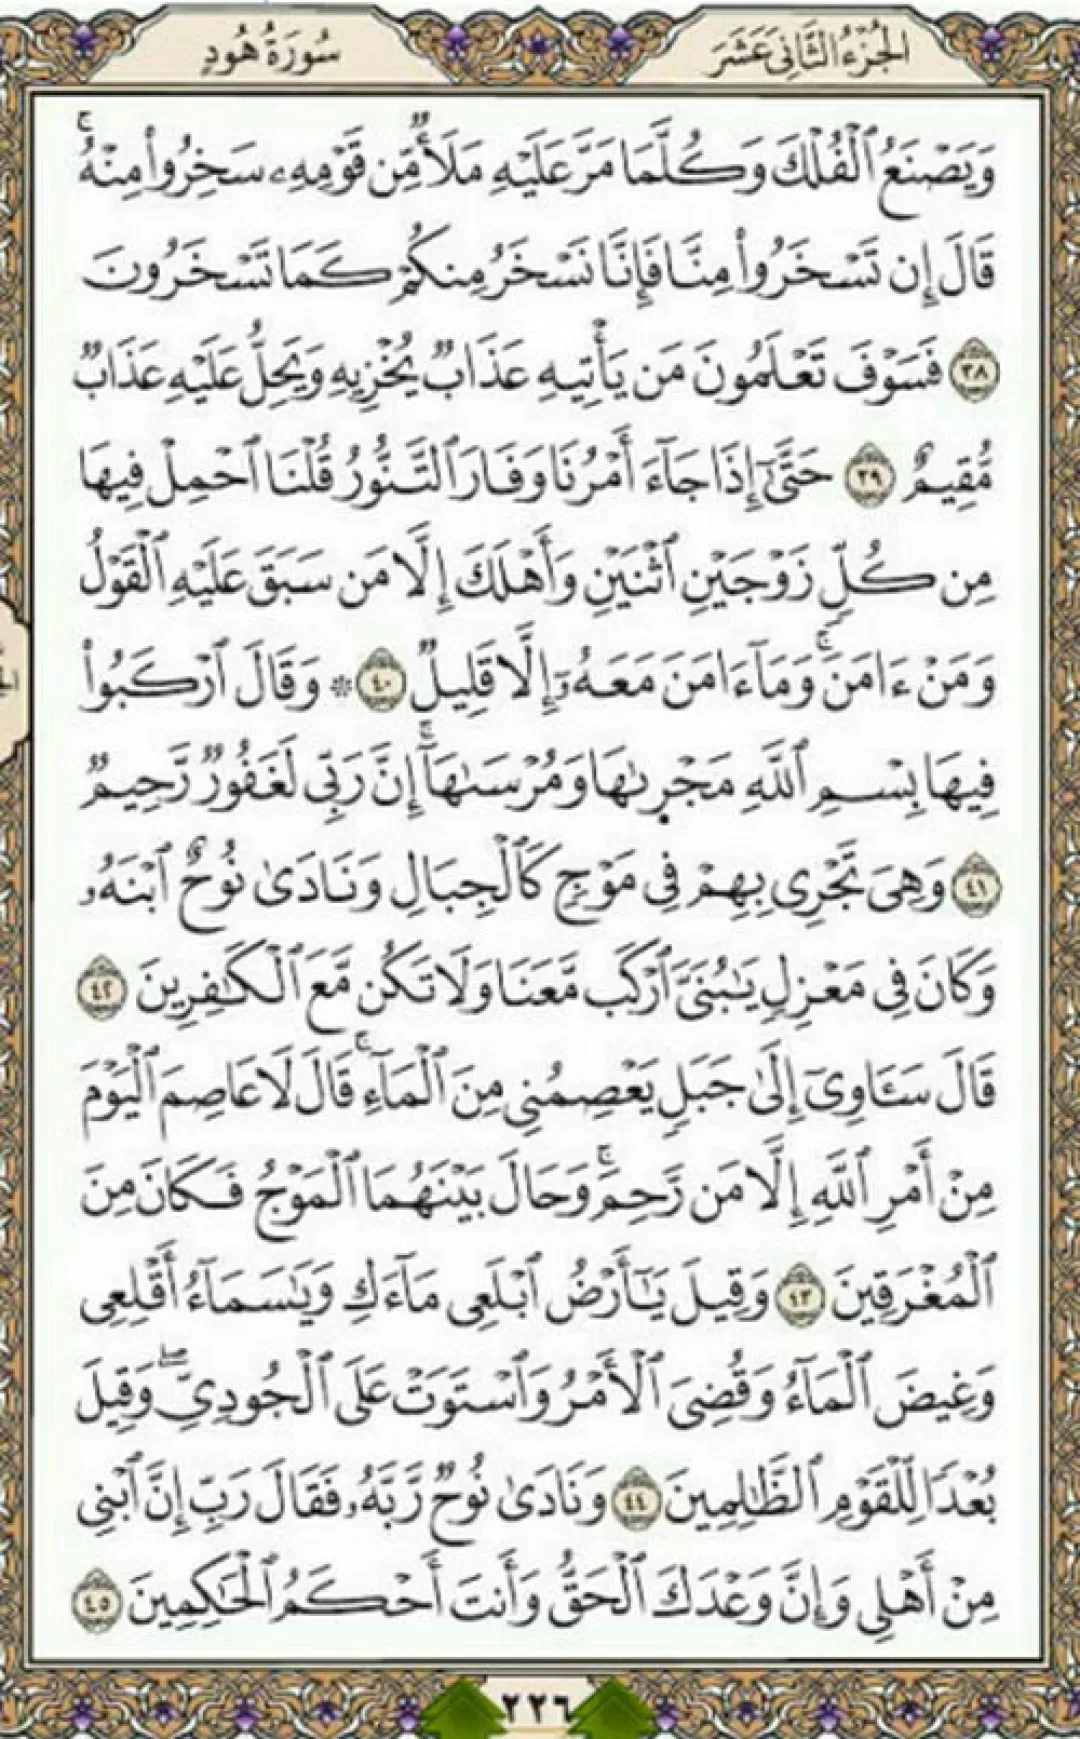 روزانه یک صفحه با کلام با طراوت قرآن